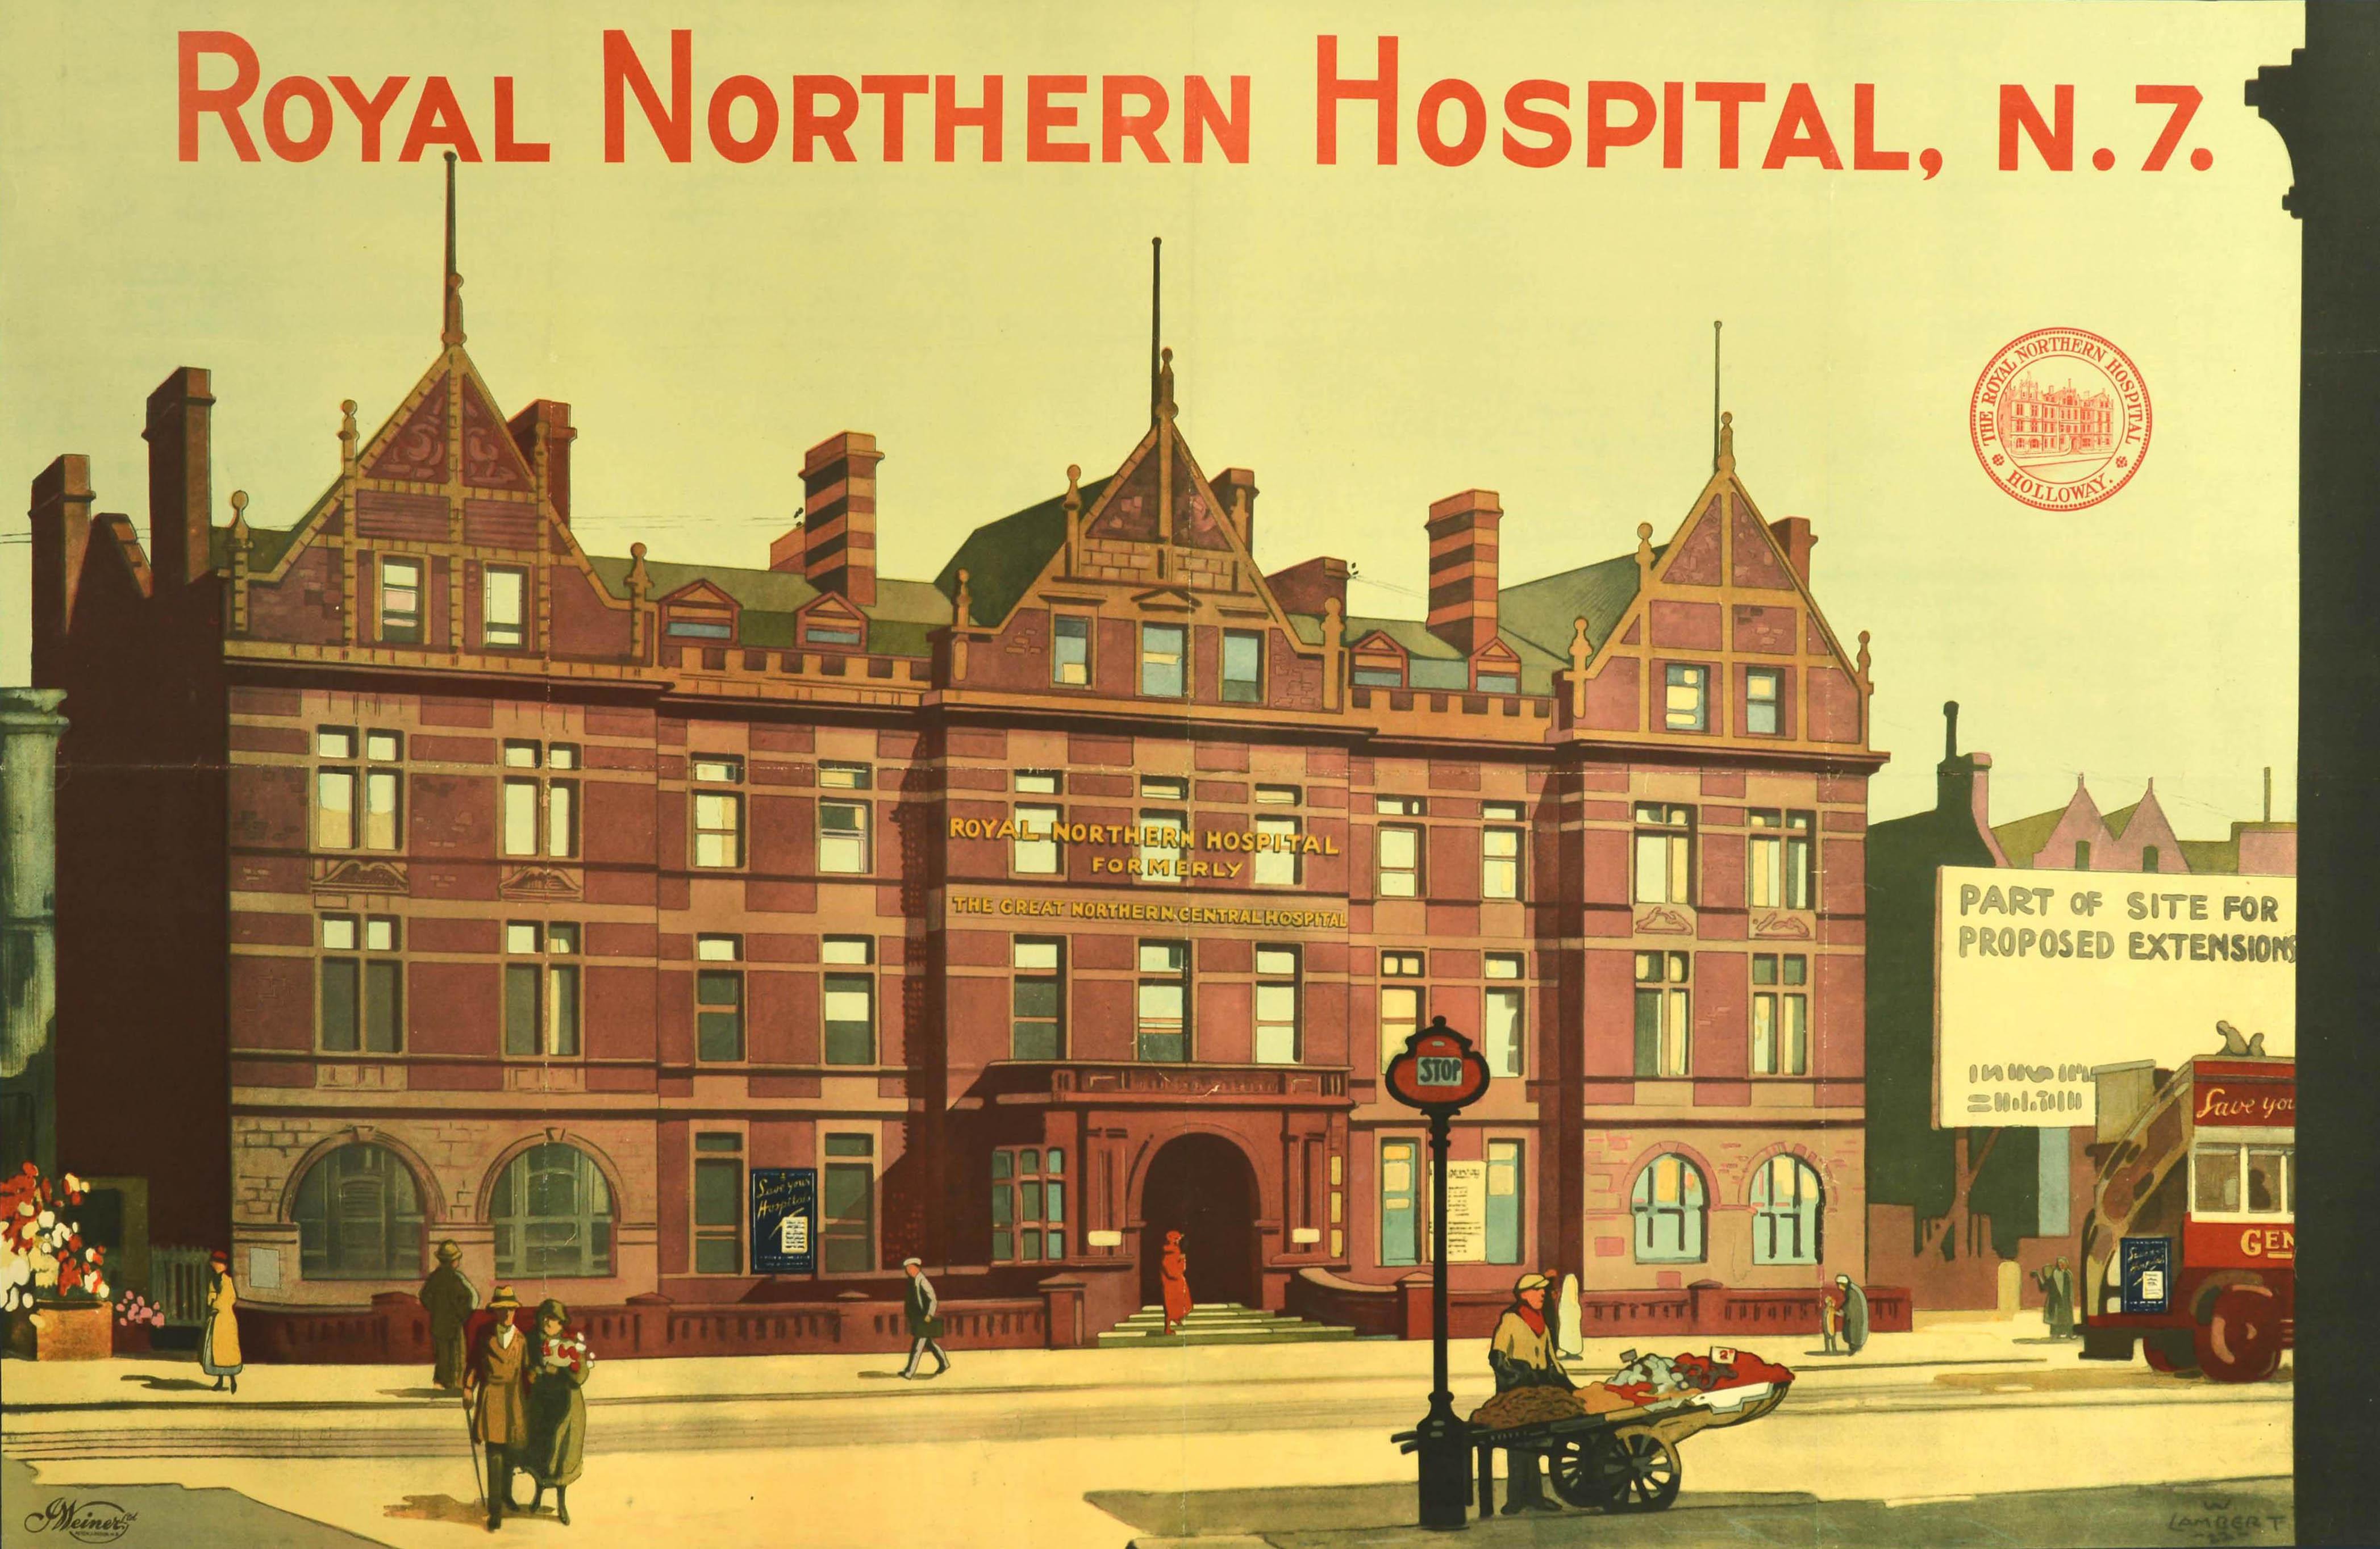 Originales antikes Plakat für das Royal Northern Hospital N7, das das schicke neue Krankenhaus zeigt, mit einer Person auf der Haupttreppe am Eingang, Menschen, die an einem Obststand und Blumenverkäufern vorbeigehen, einer Bushaltestelle und einem